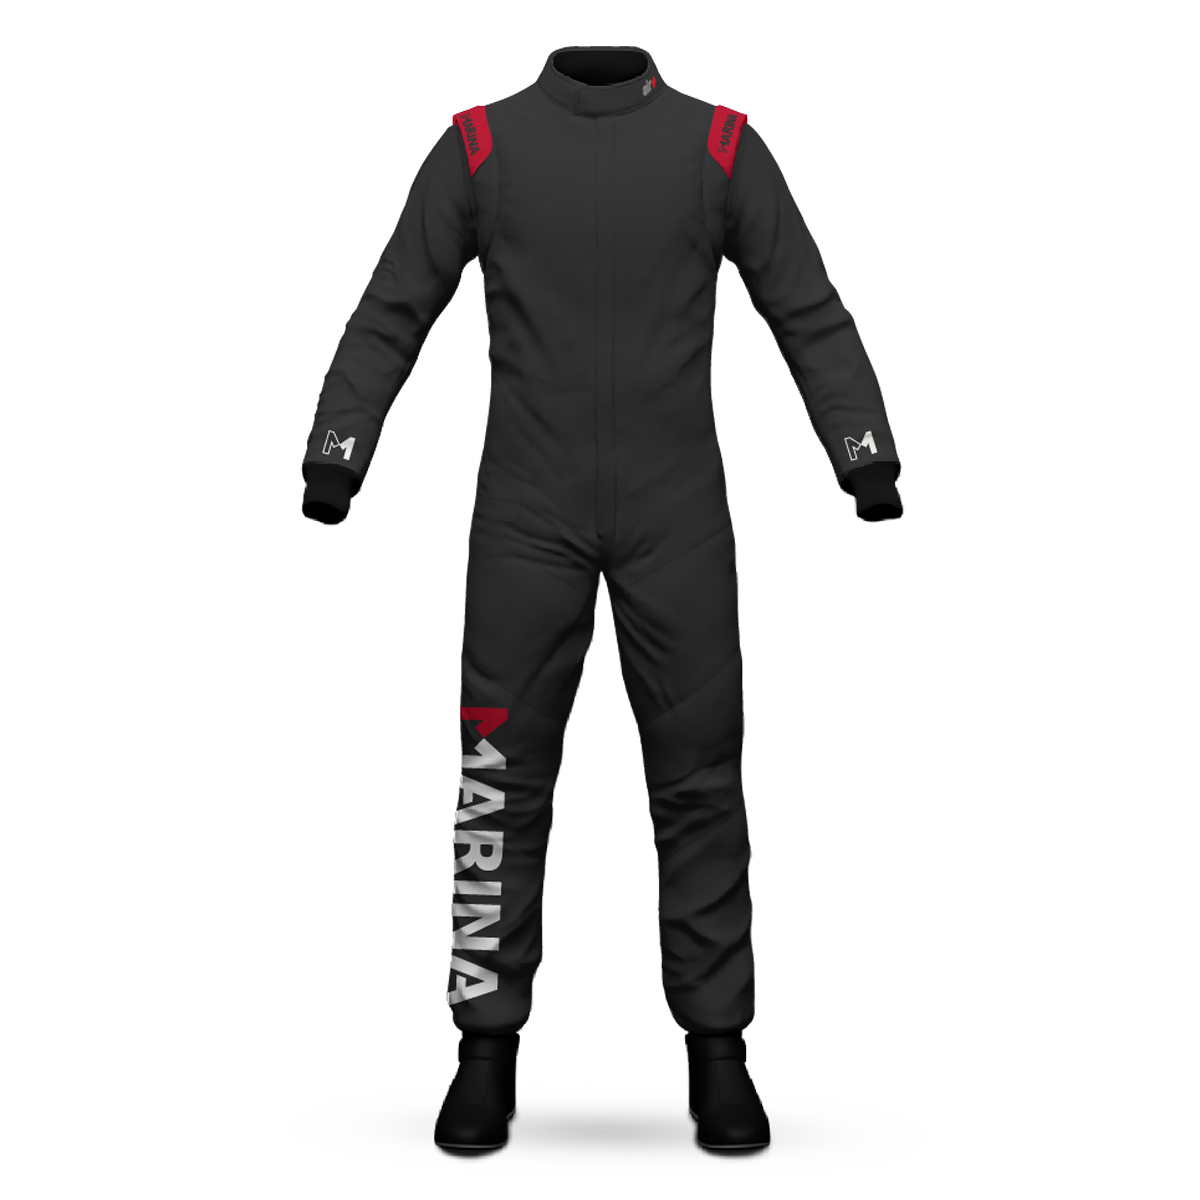 Marina Air Plus DP Team Racing Suit